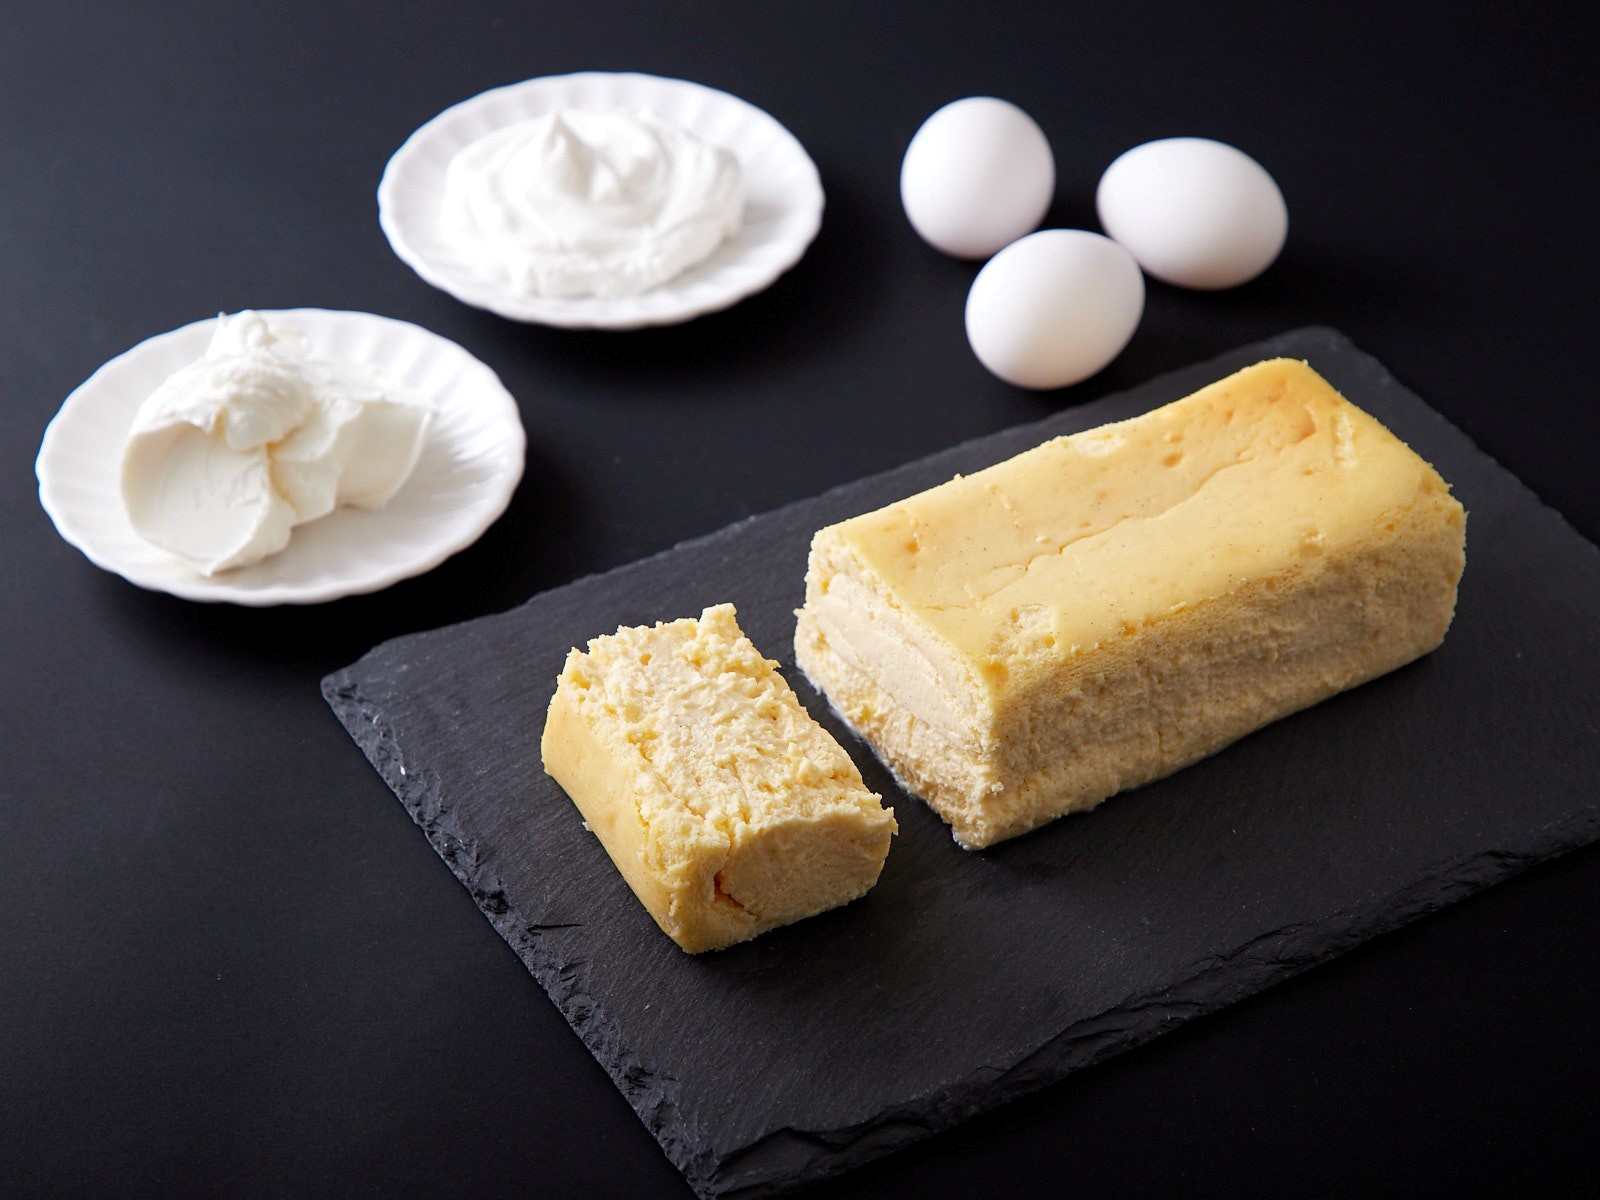 チーズケーキマニア監修 スイーツ界 ネクストブーム筆頭格 テリーヌチーズケーキが赤坂で食べられる 株式会社ノムノのプレスリリース